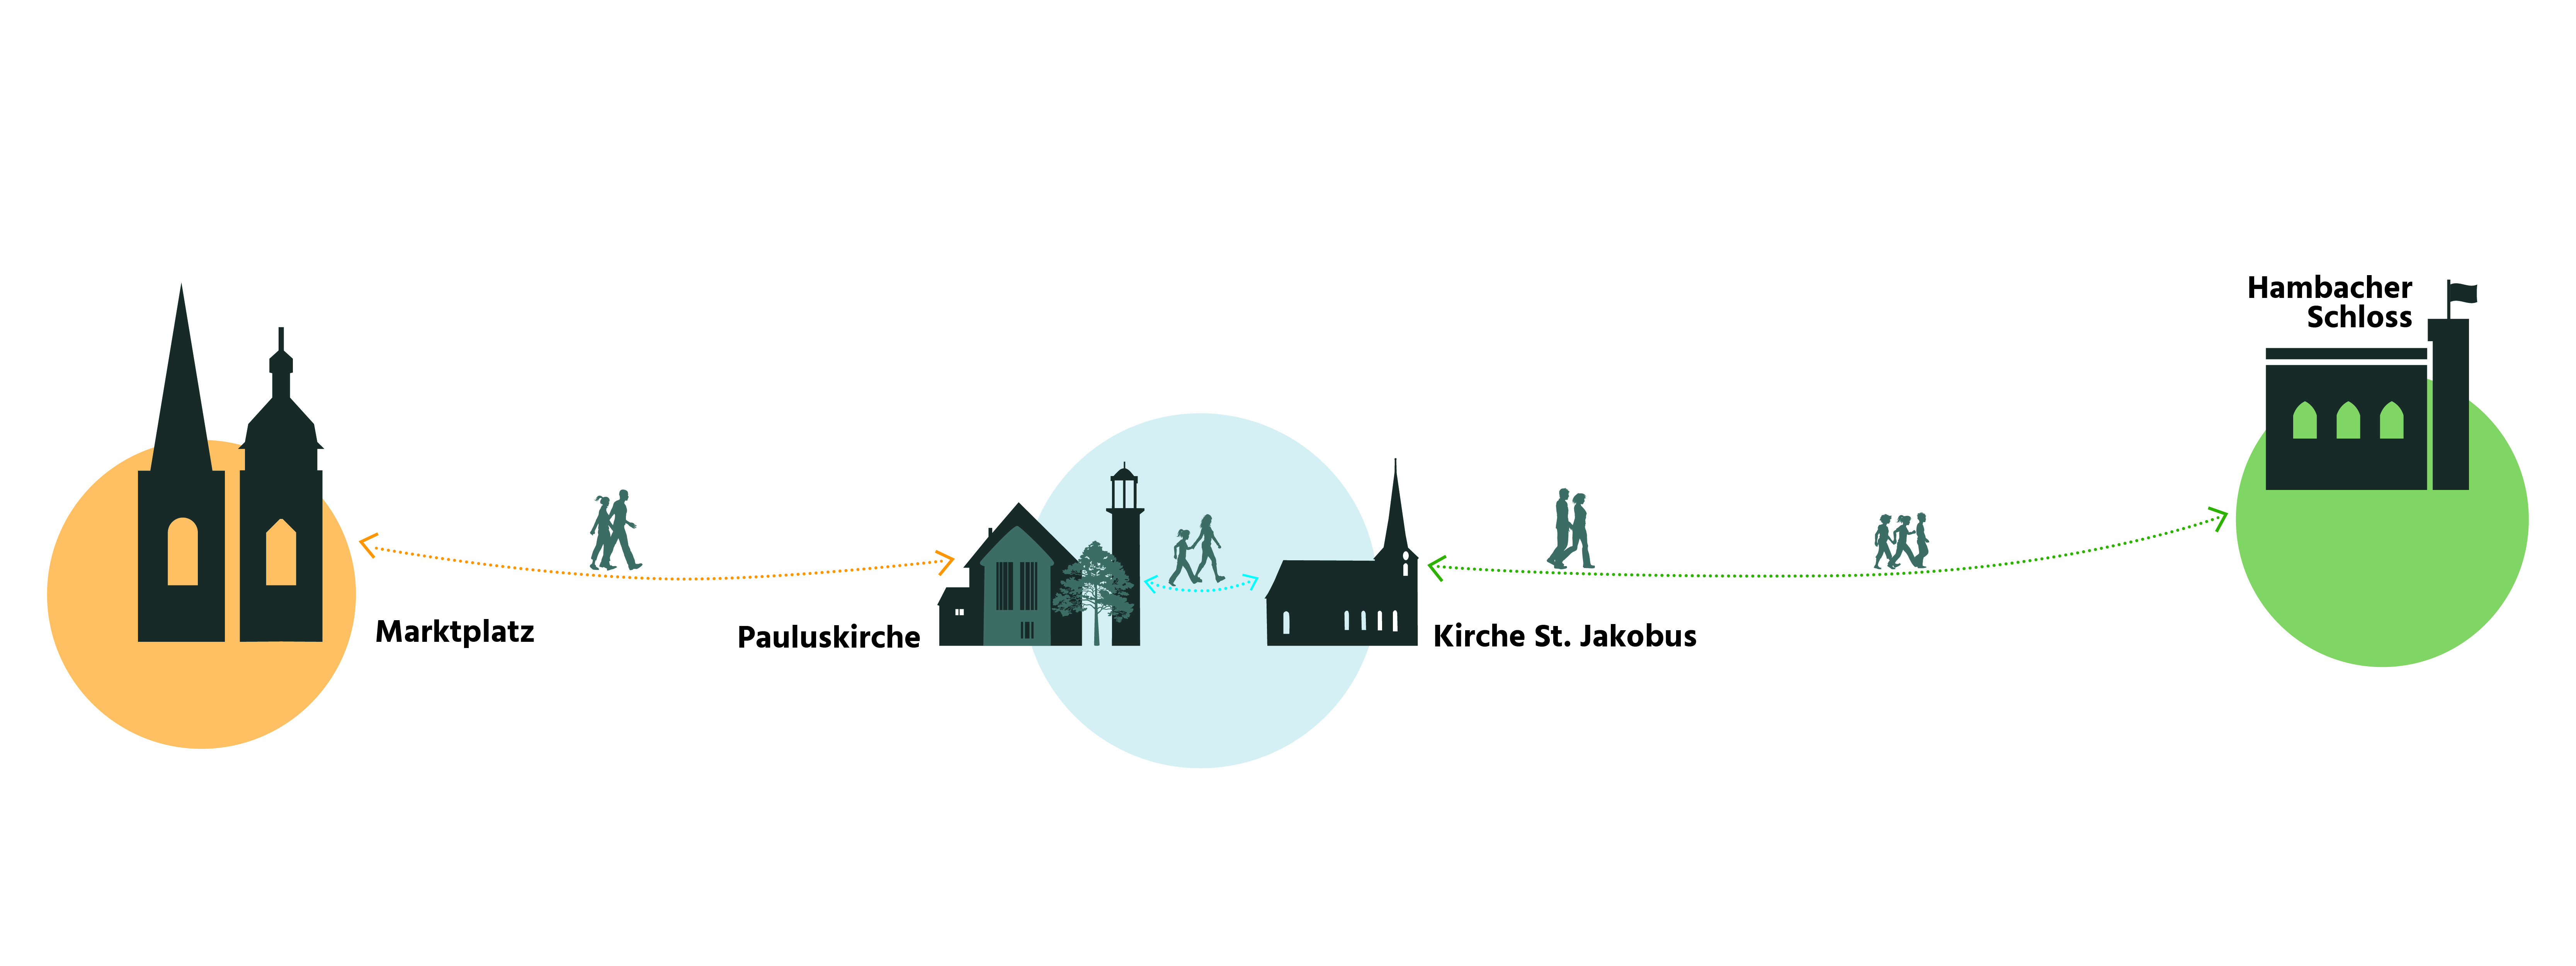 Bild vergrößern: Der Freiheitsweg führt vom historischen Marktplatz über die Stationen Pauluskirche, Kirche St. Jakobus zum Hambacher Schloss und wieder zurück. 